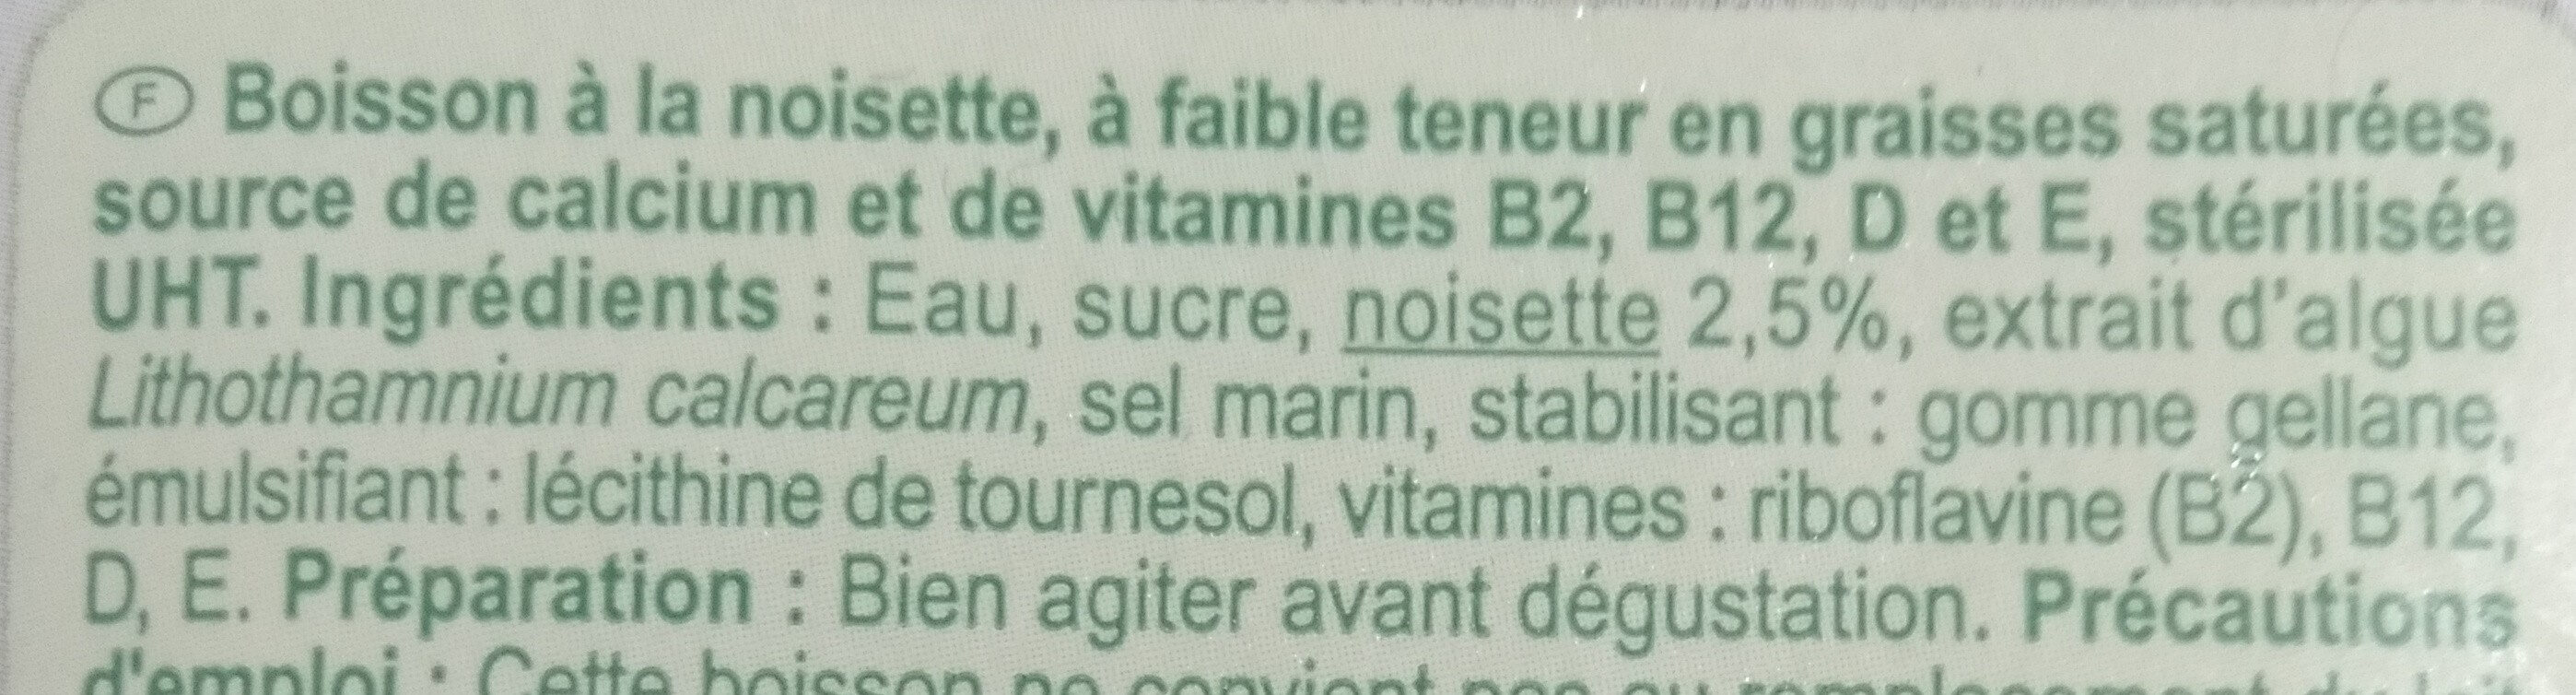 Noisette végétal - Ingredienser - fr